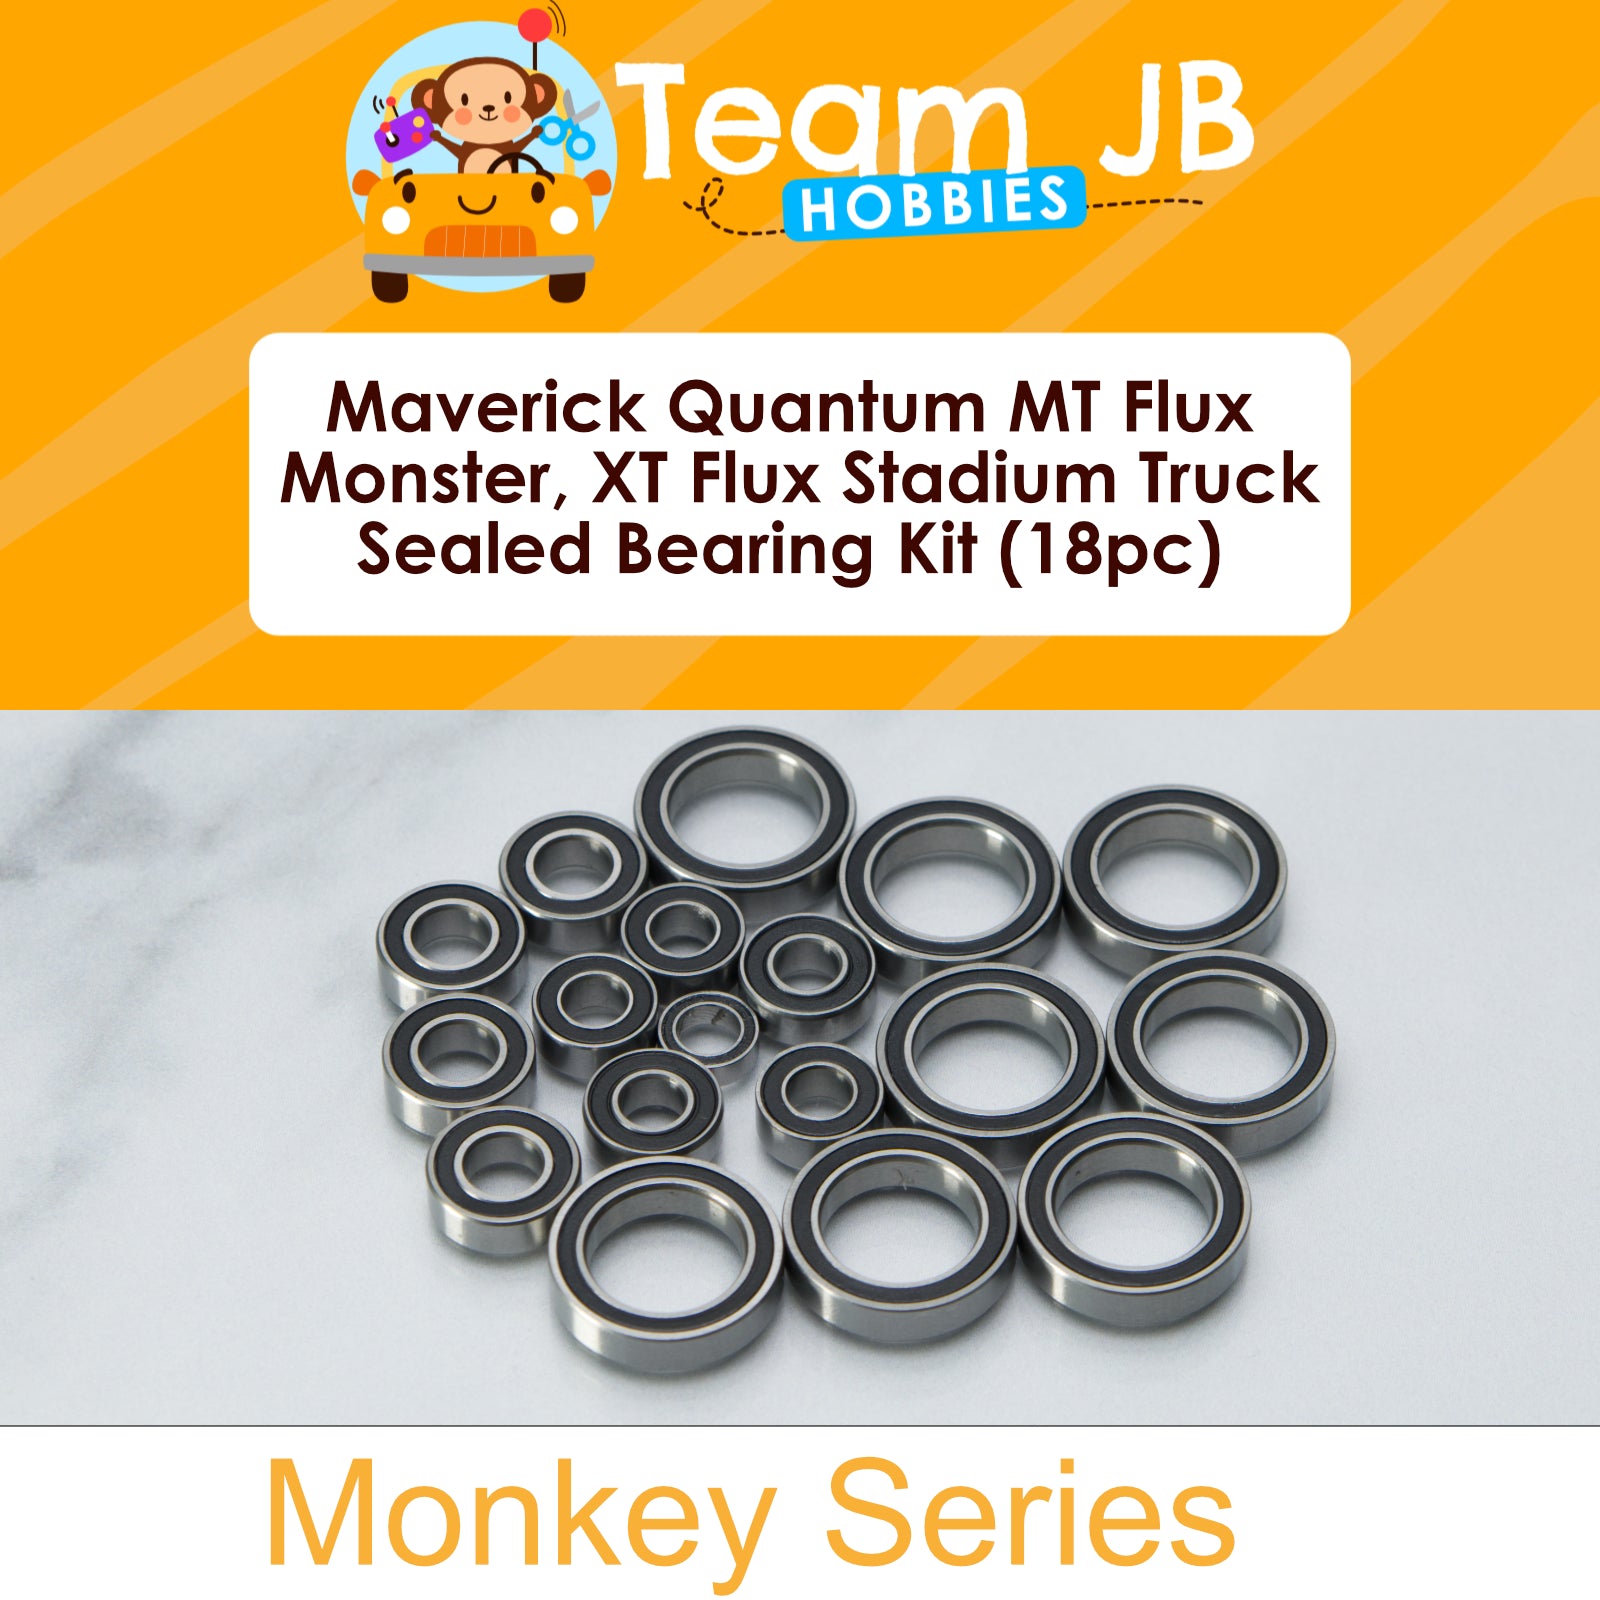 Maverick Quantum MT Flux Monster, XT Flux Stadium Truck - Sealed Bearing Kit